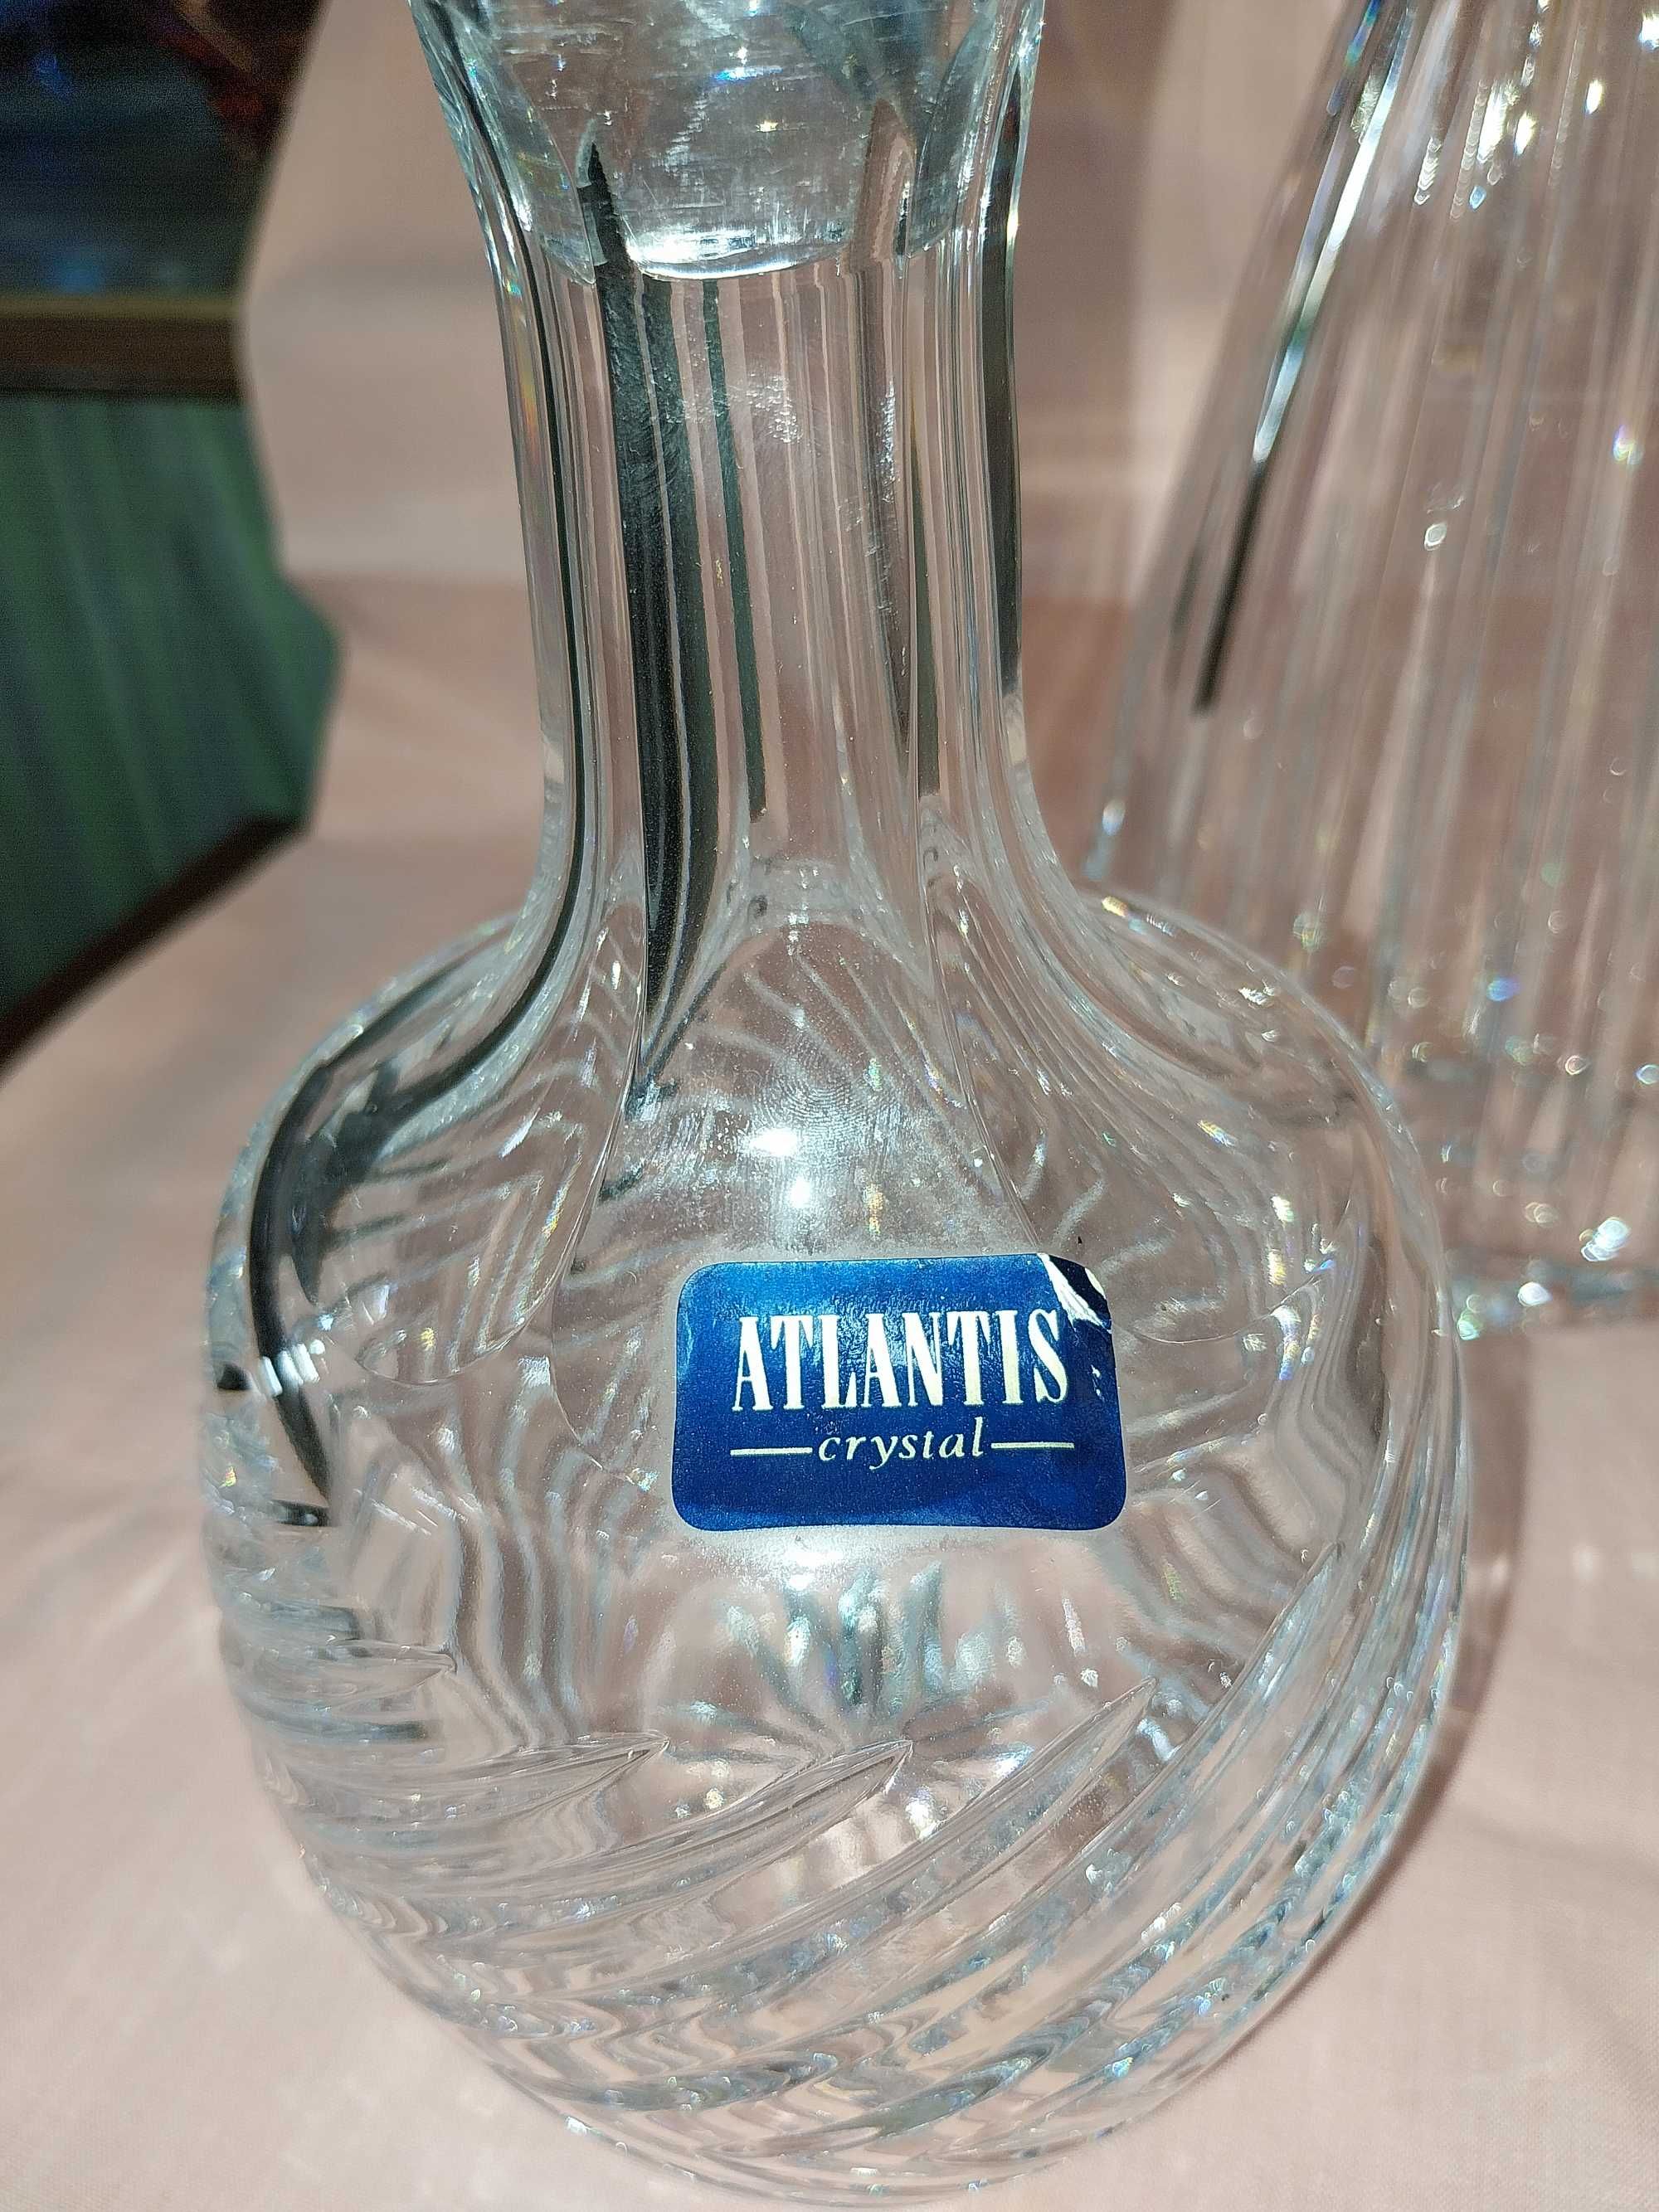 Vendo garrafas atlantis novas